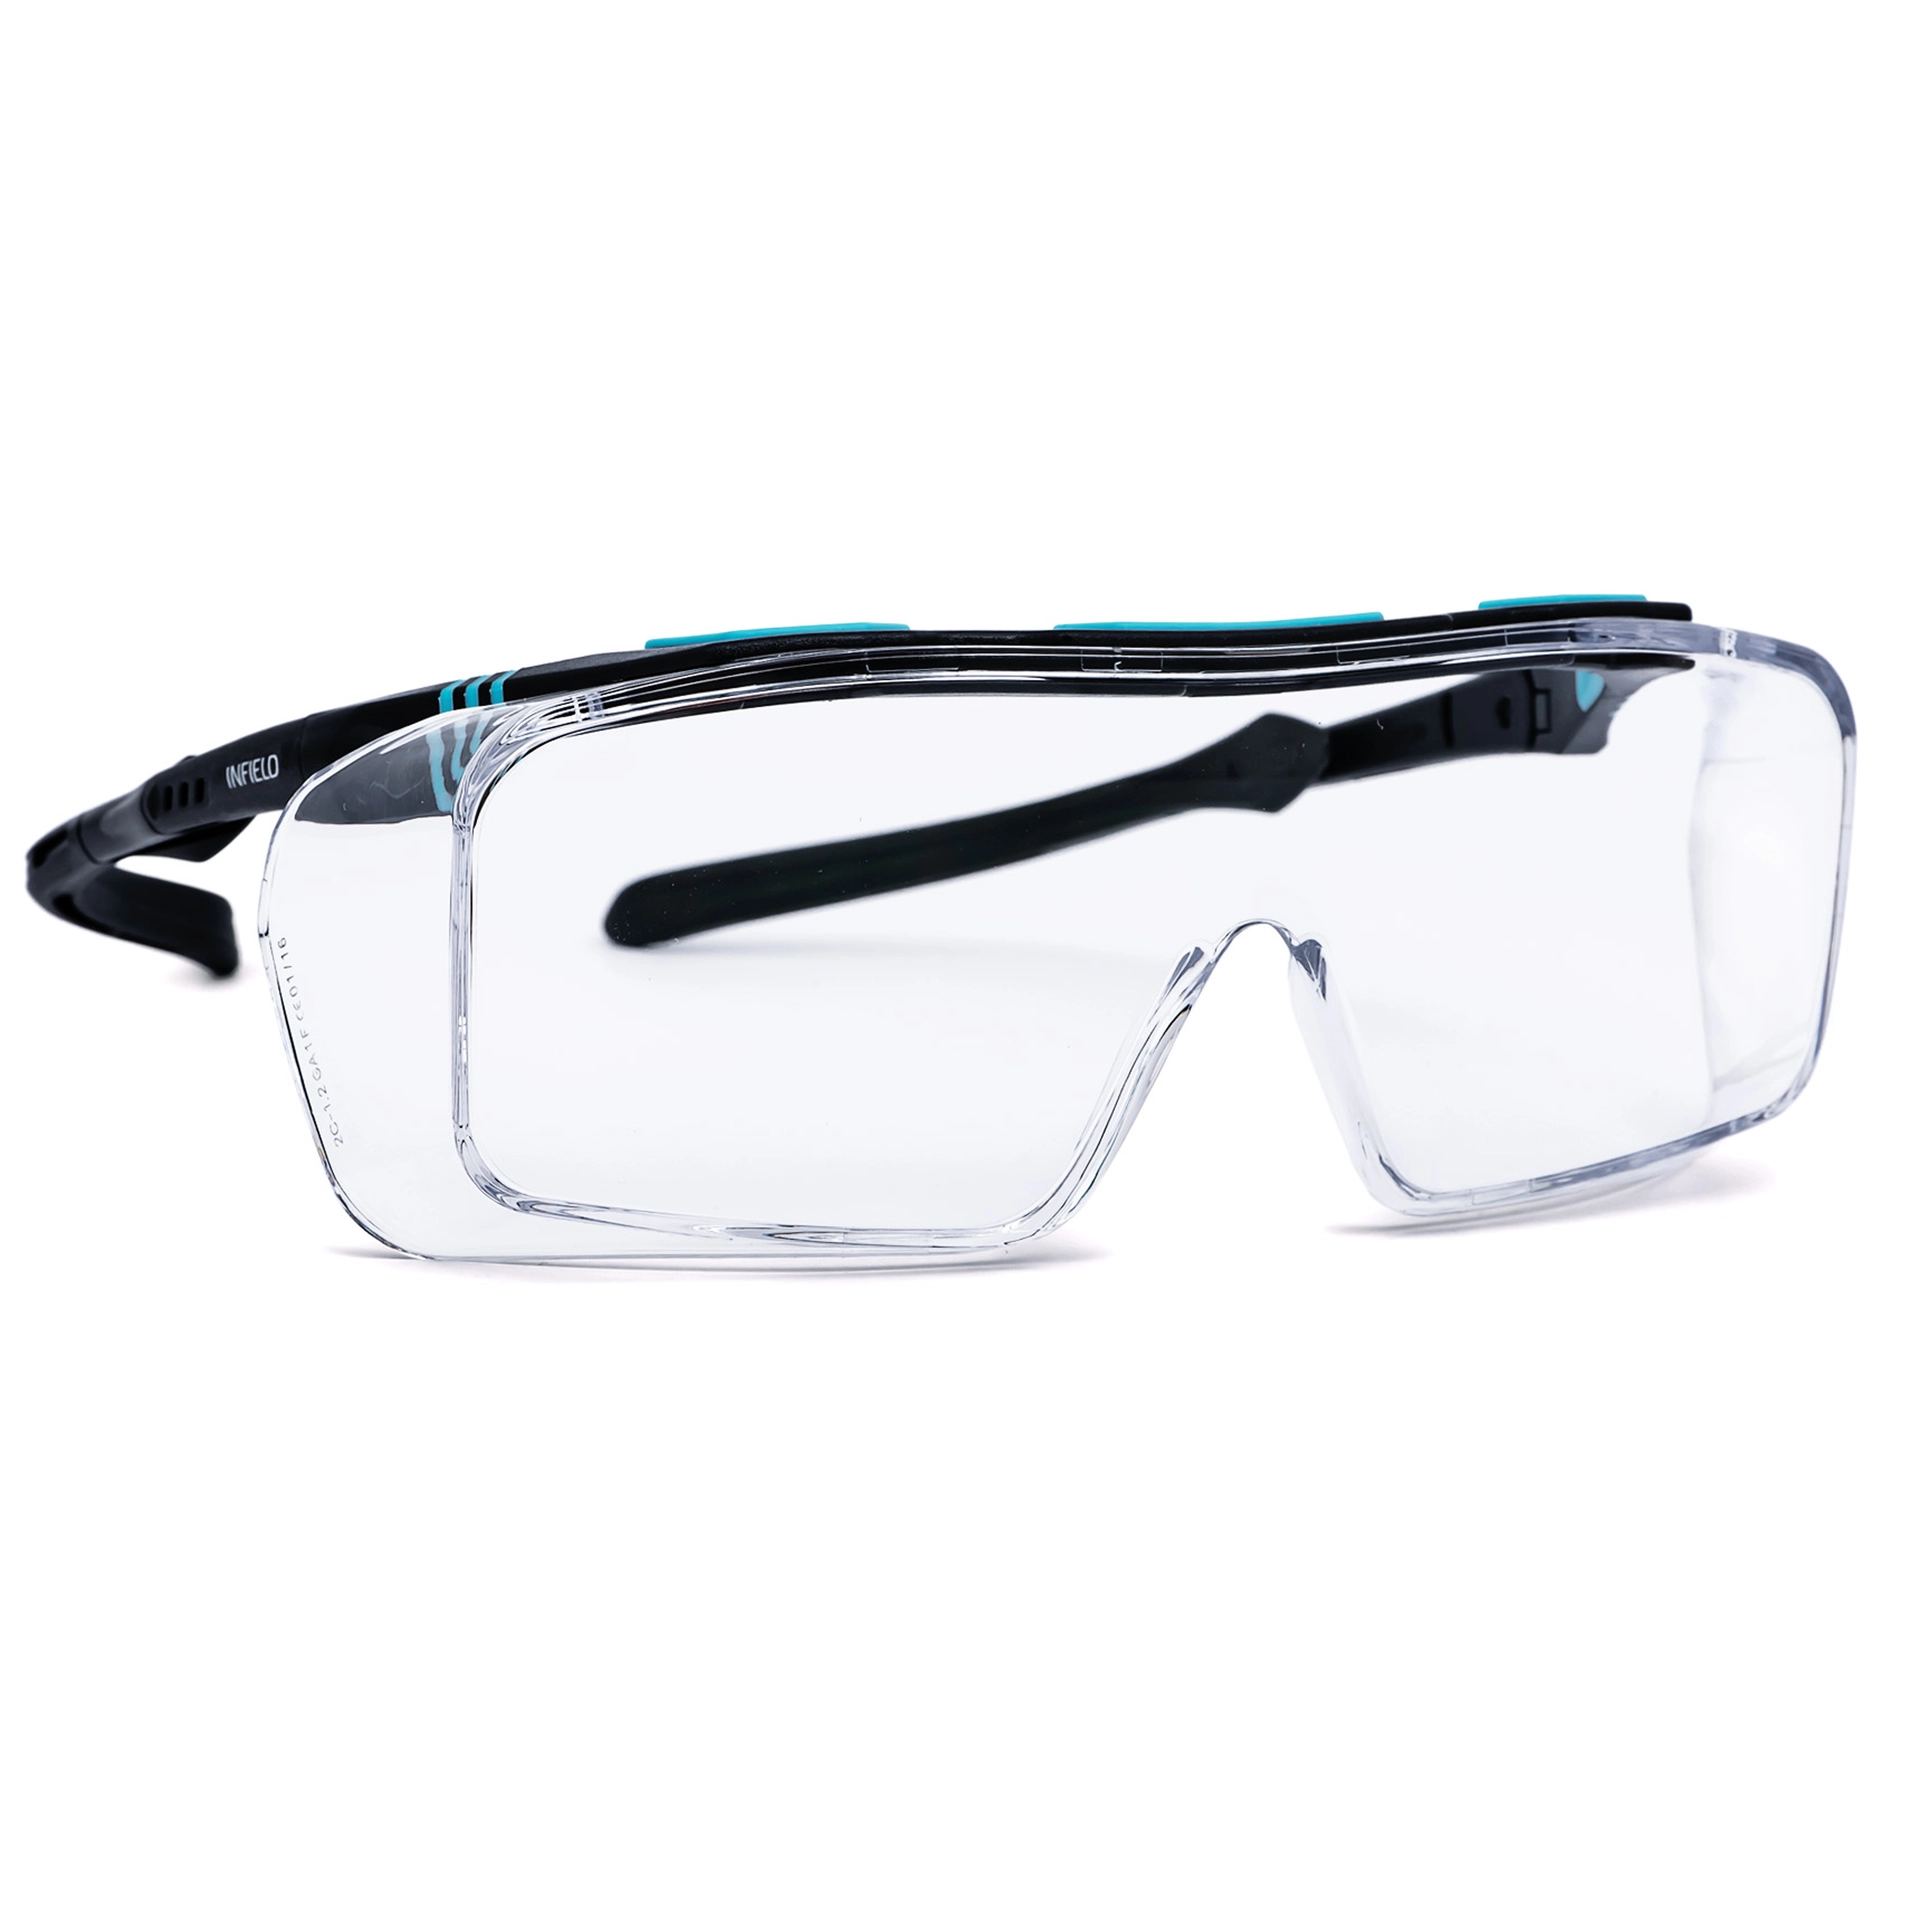 103173 - Schutzbrille für Brillenträger, schwarz/türkis